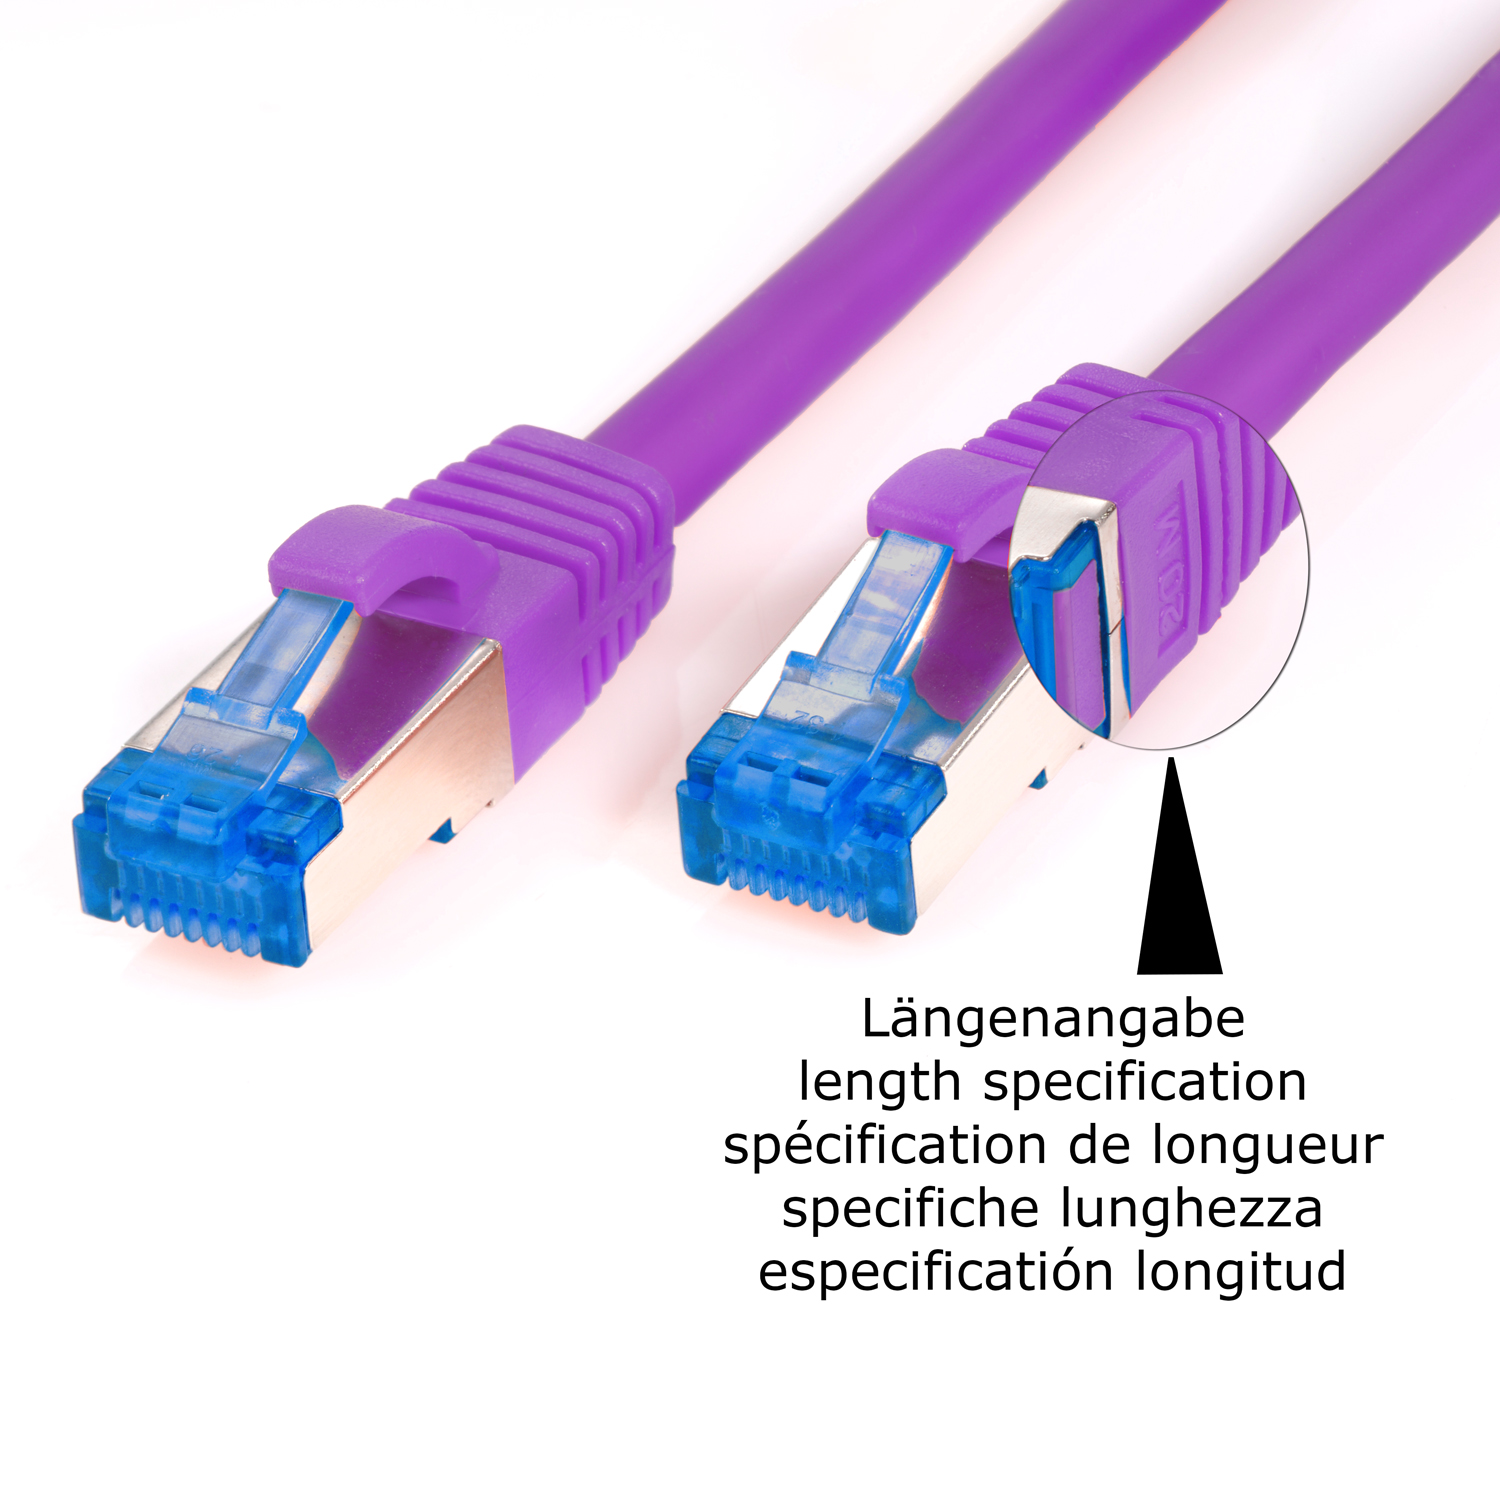 Patchkabel Netzwerkkabel S/FTP 10GBit, TPFNET violett, 5er m Netzwerkkabel, Pack / 0,25m 0,25